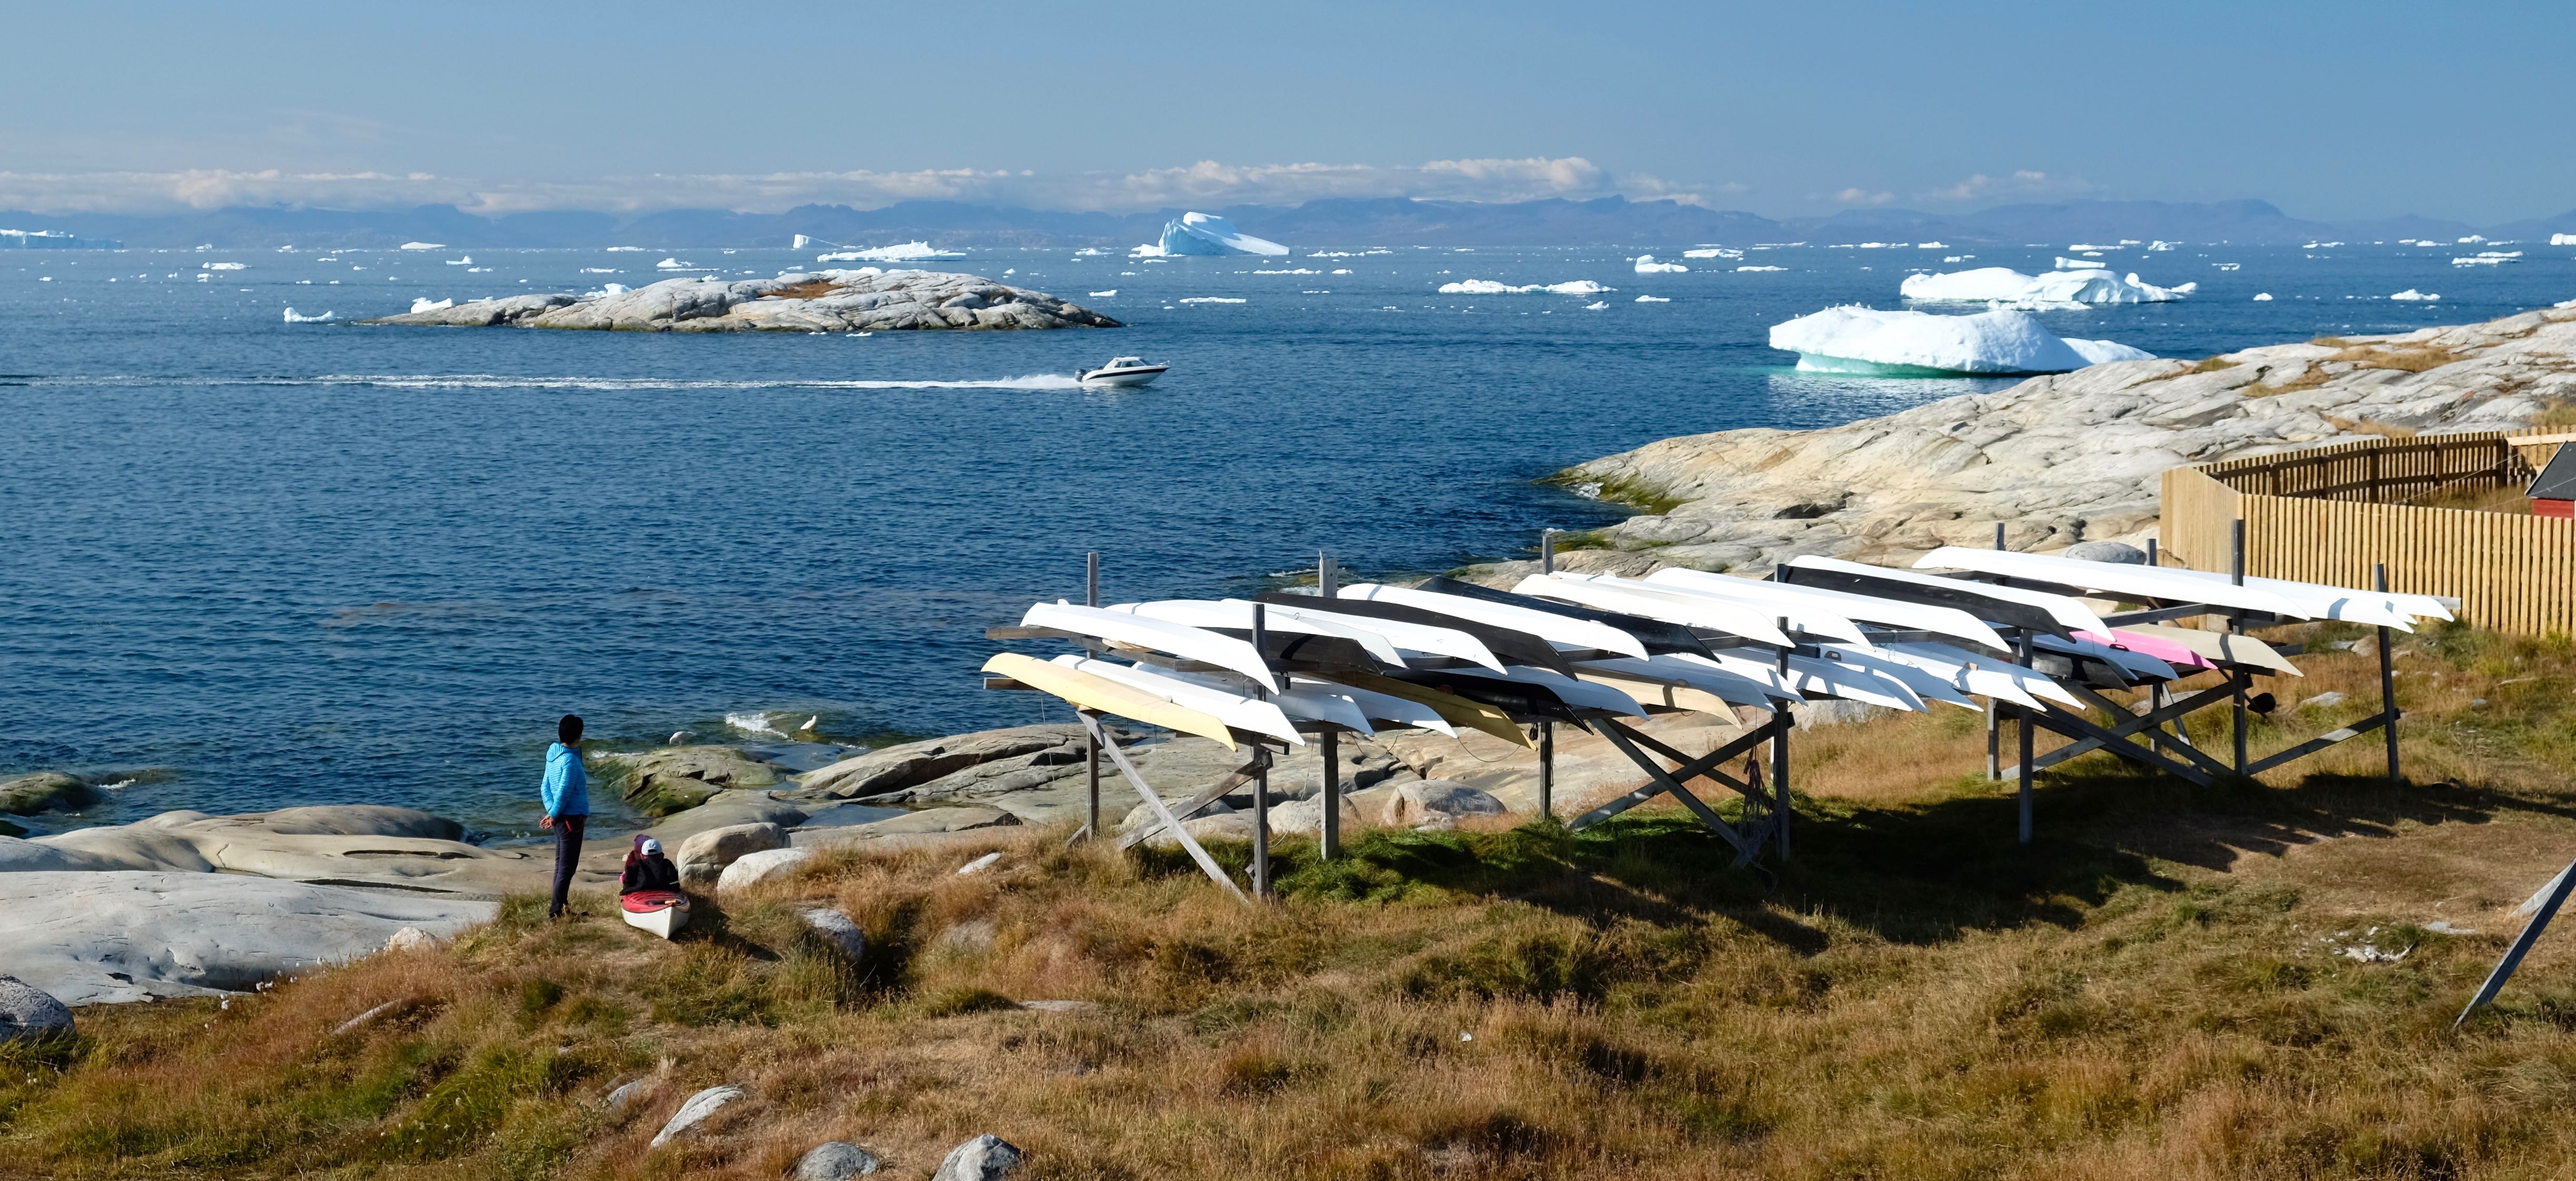 Coastal views in Ilulissat